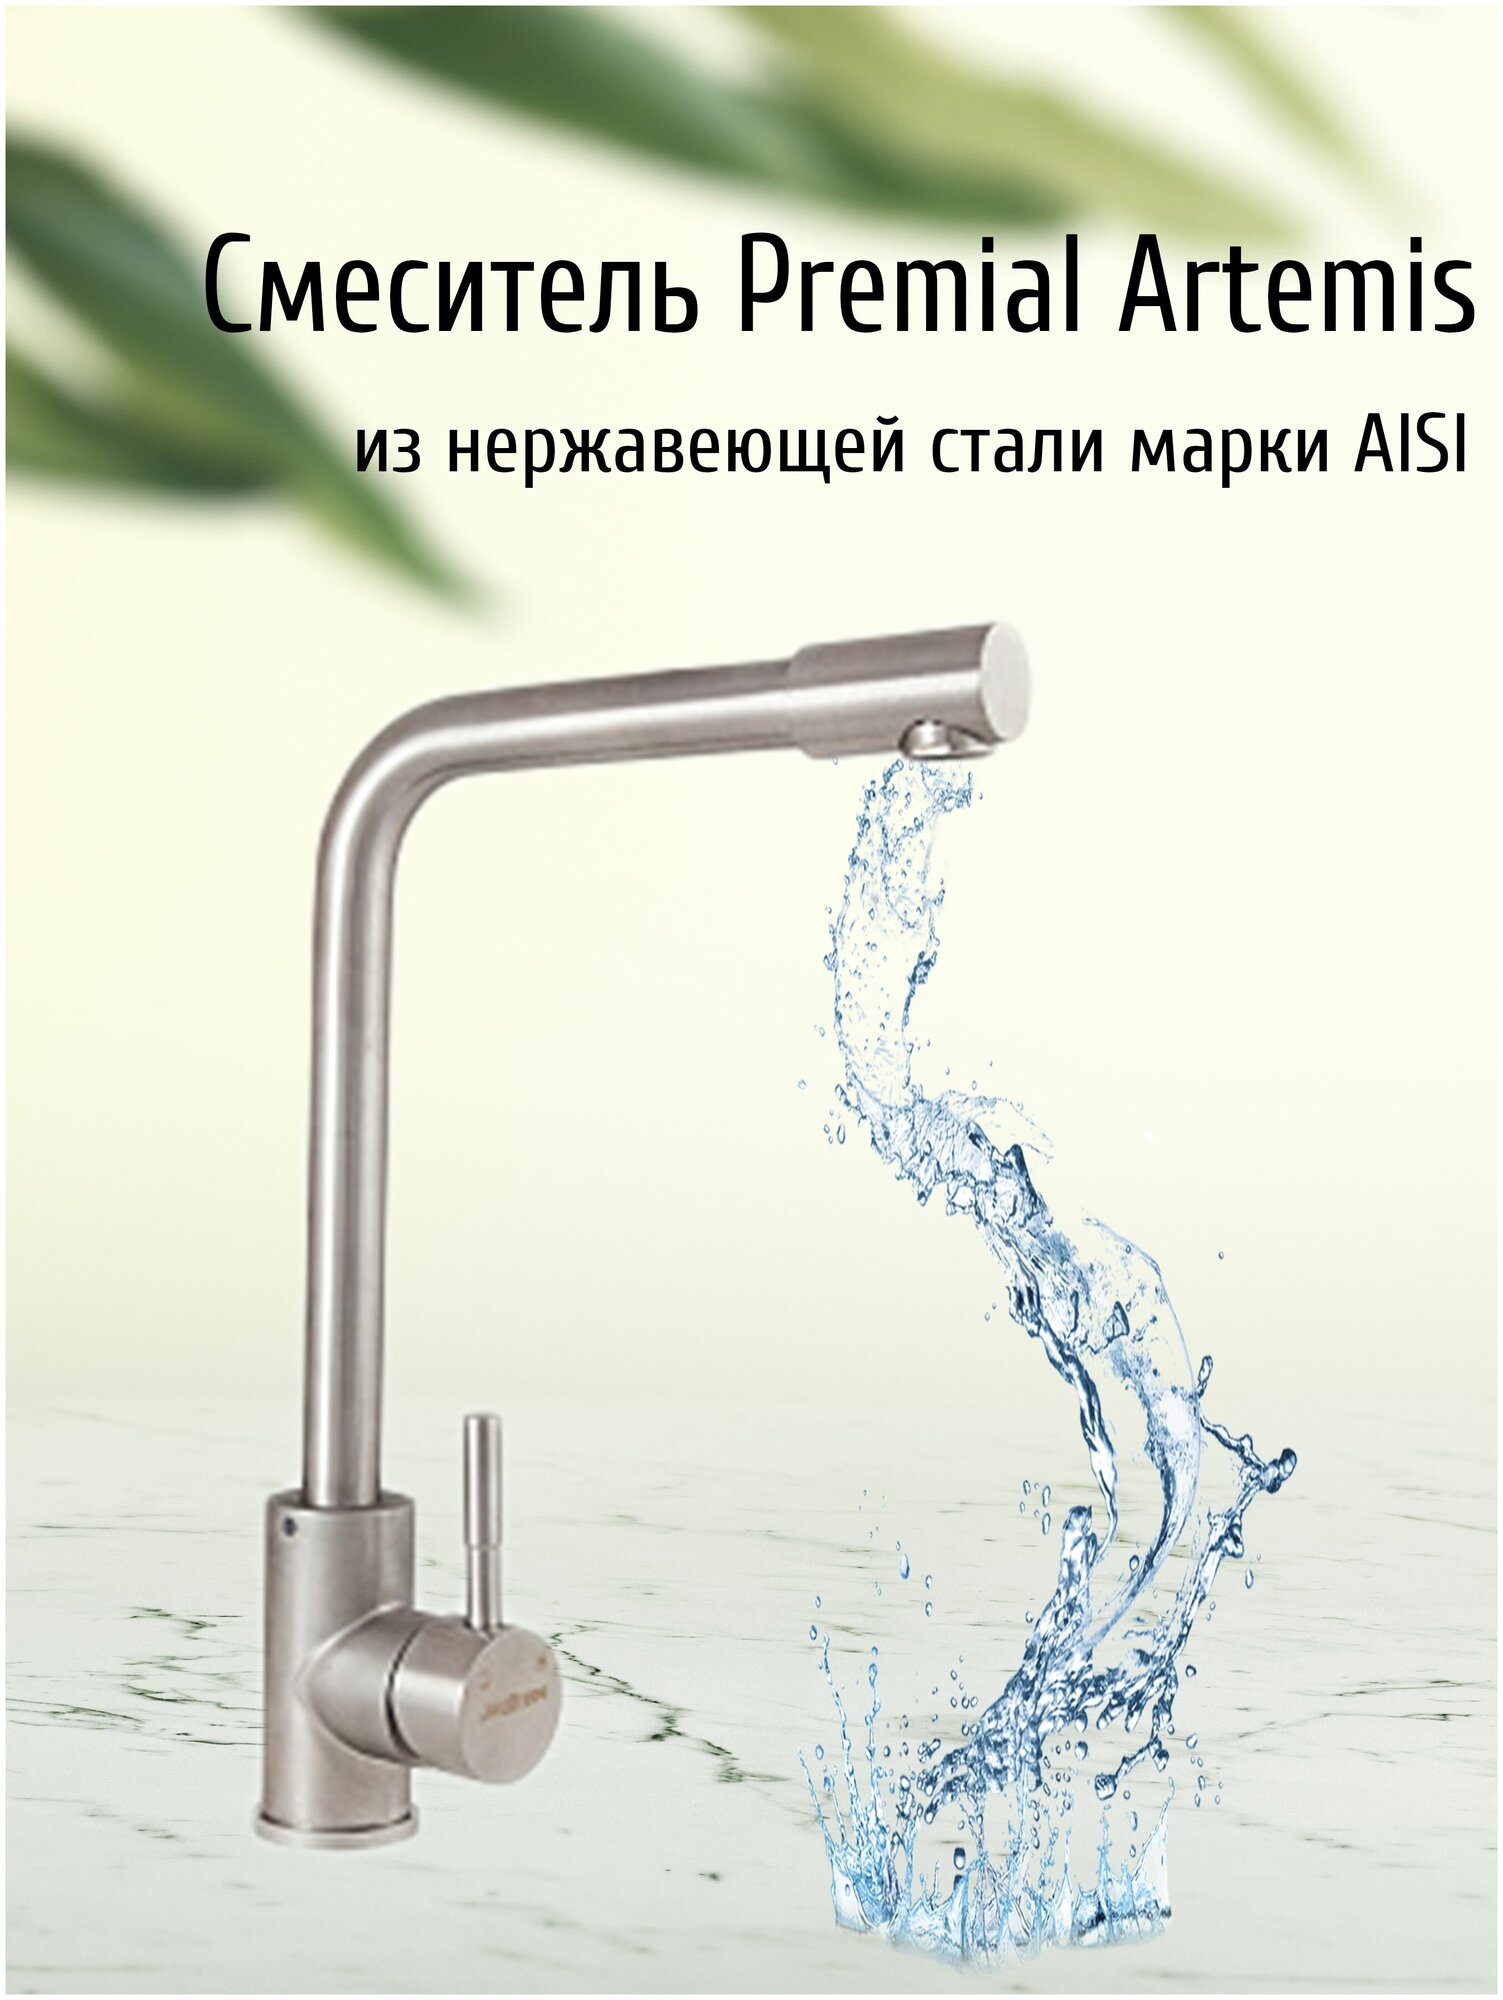 Смеситель для кухни Premial Artemis с подводкой и крепежом, из нержавеющей стали / Кран для раковины и мойки